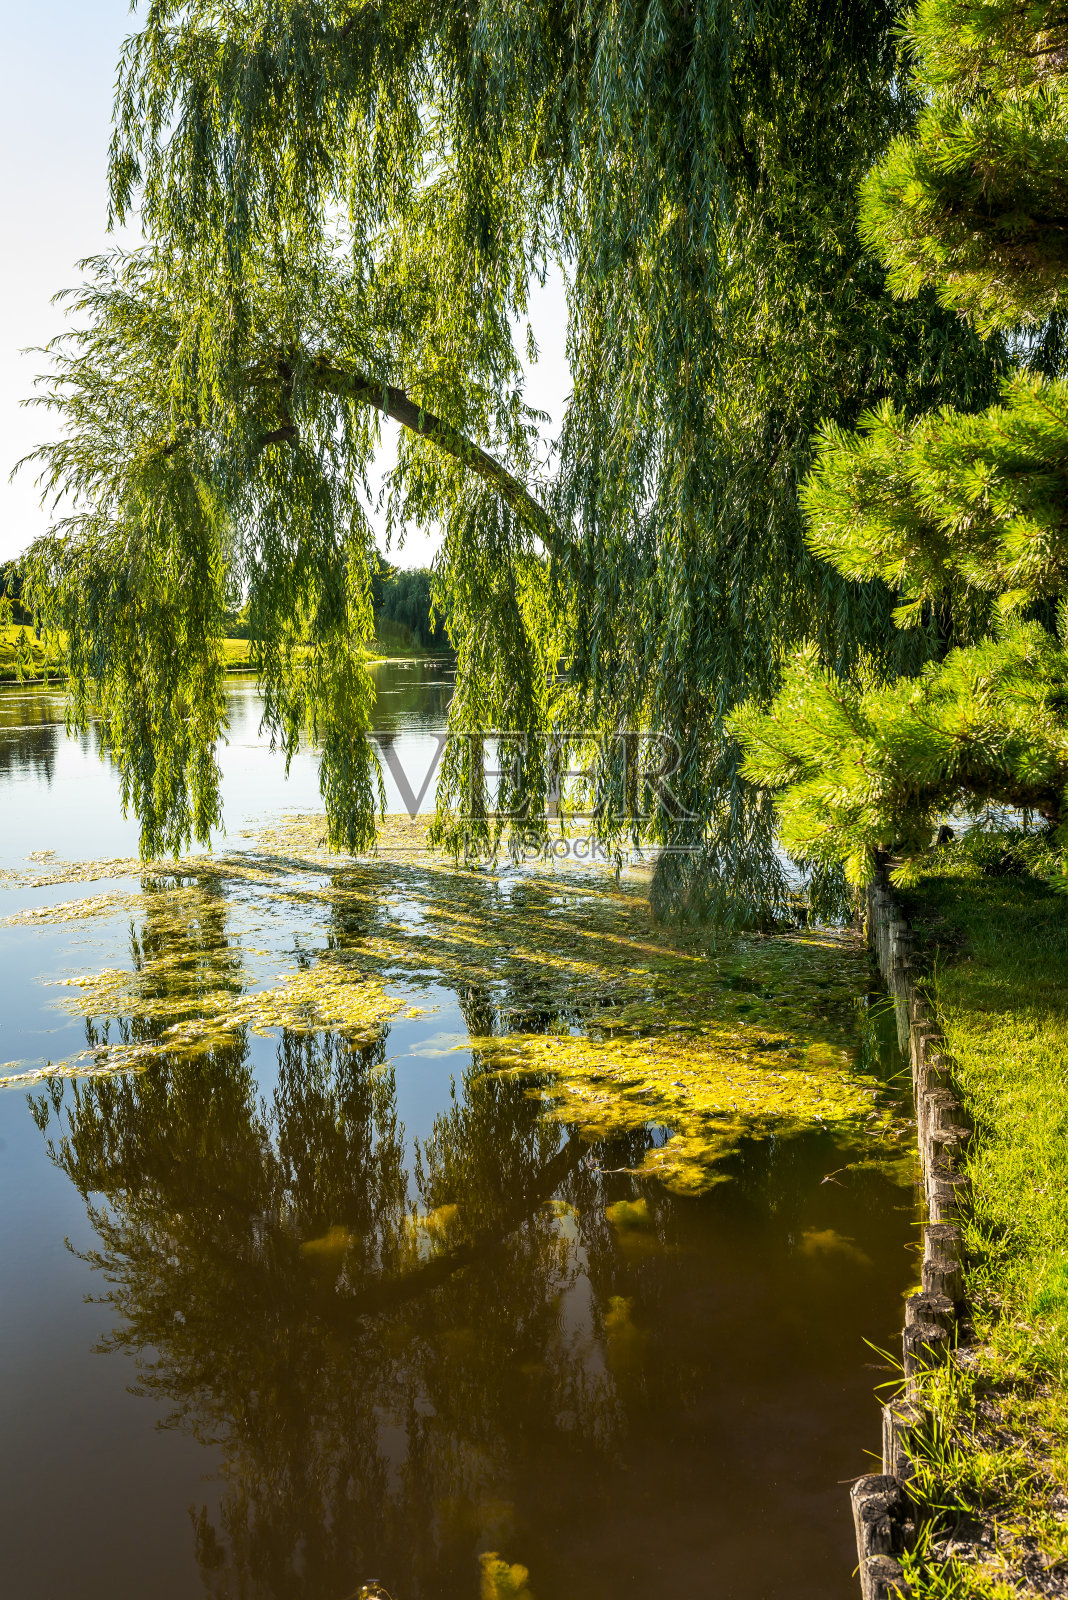 池塘上方一棵柳树的枝条照片摄影图片